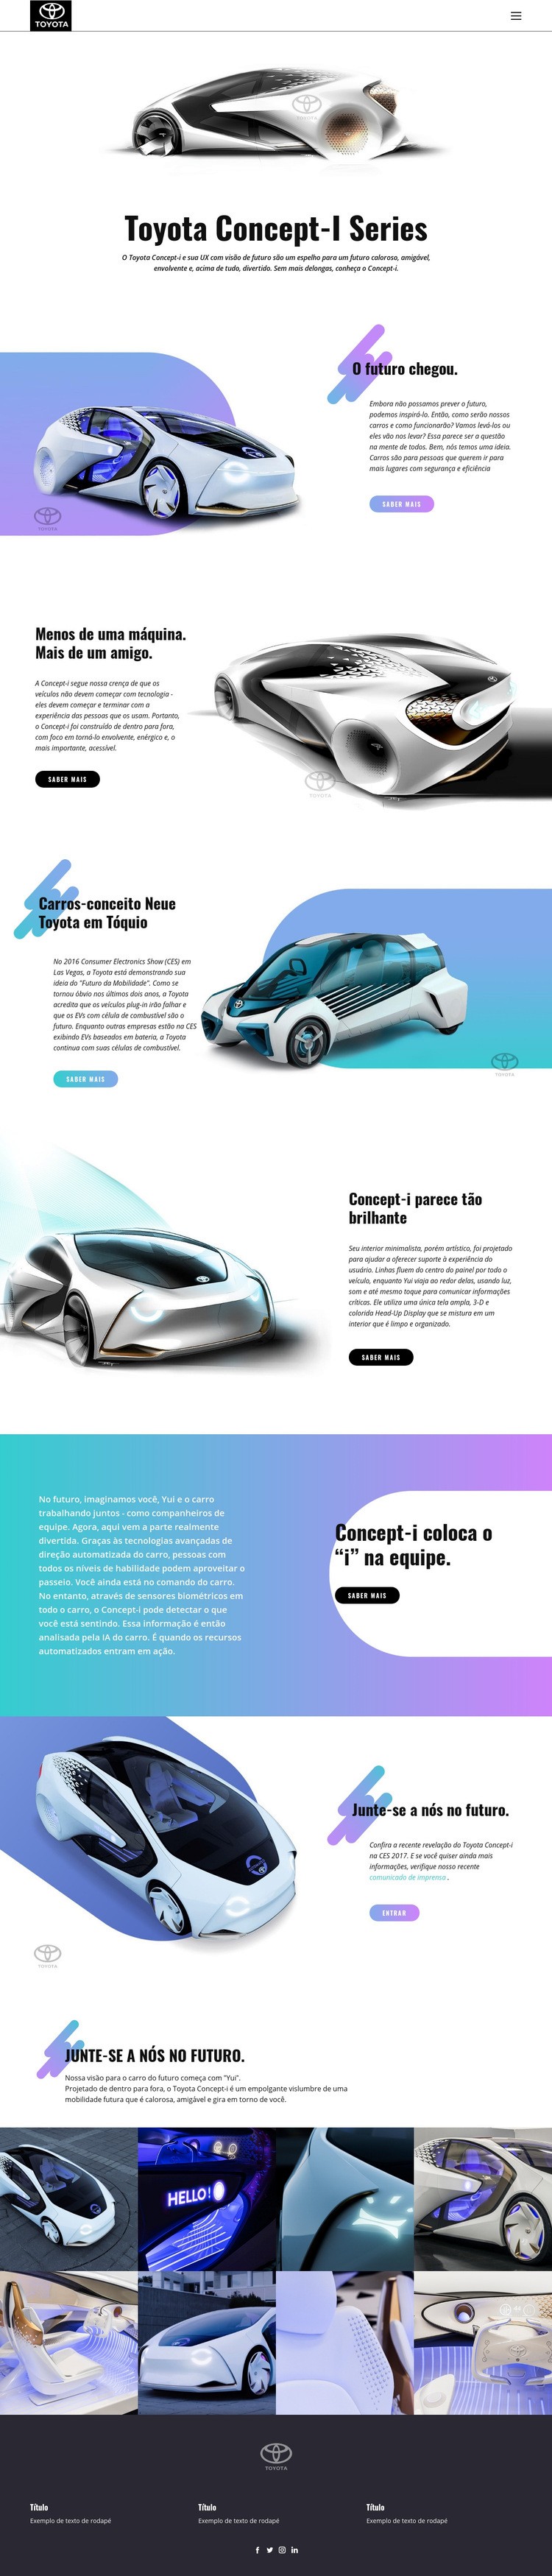 Carros inovadores avançados Design do site